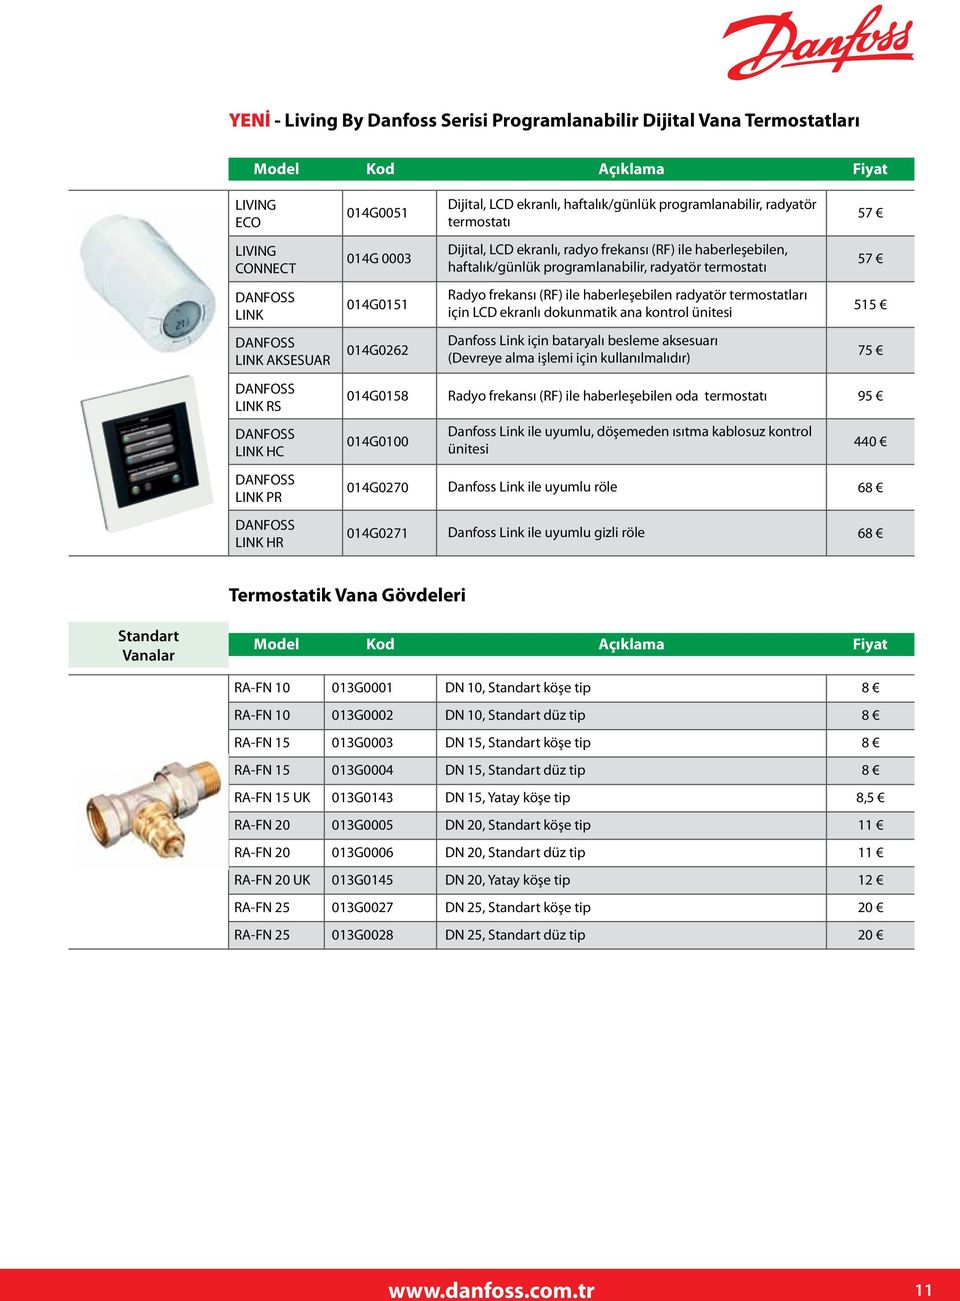 termostatları için LCD ekranlı dokunmatik ana kontrol ünitesi 515 DANFOSS LINK AKSESUAR 014G0262 Danfoss Link için bataryalı besleme aksesuarı (Devreye alma işlemi için kullanılmalıdır) 75 DANFOSS